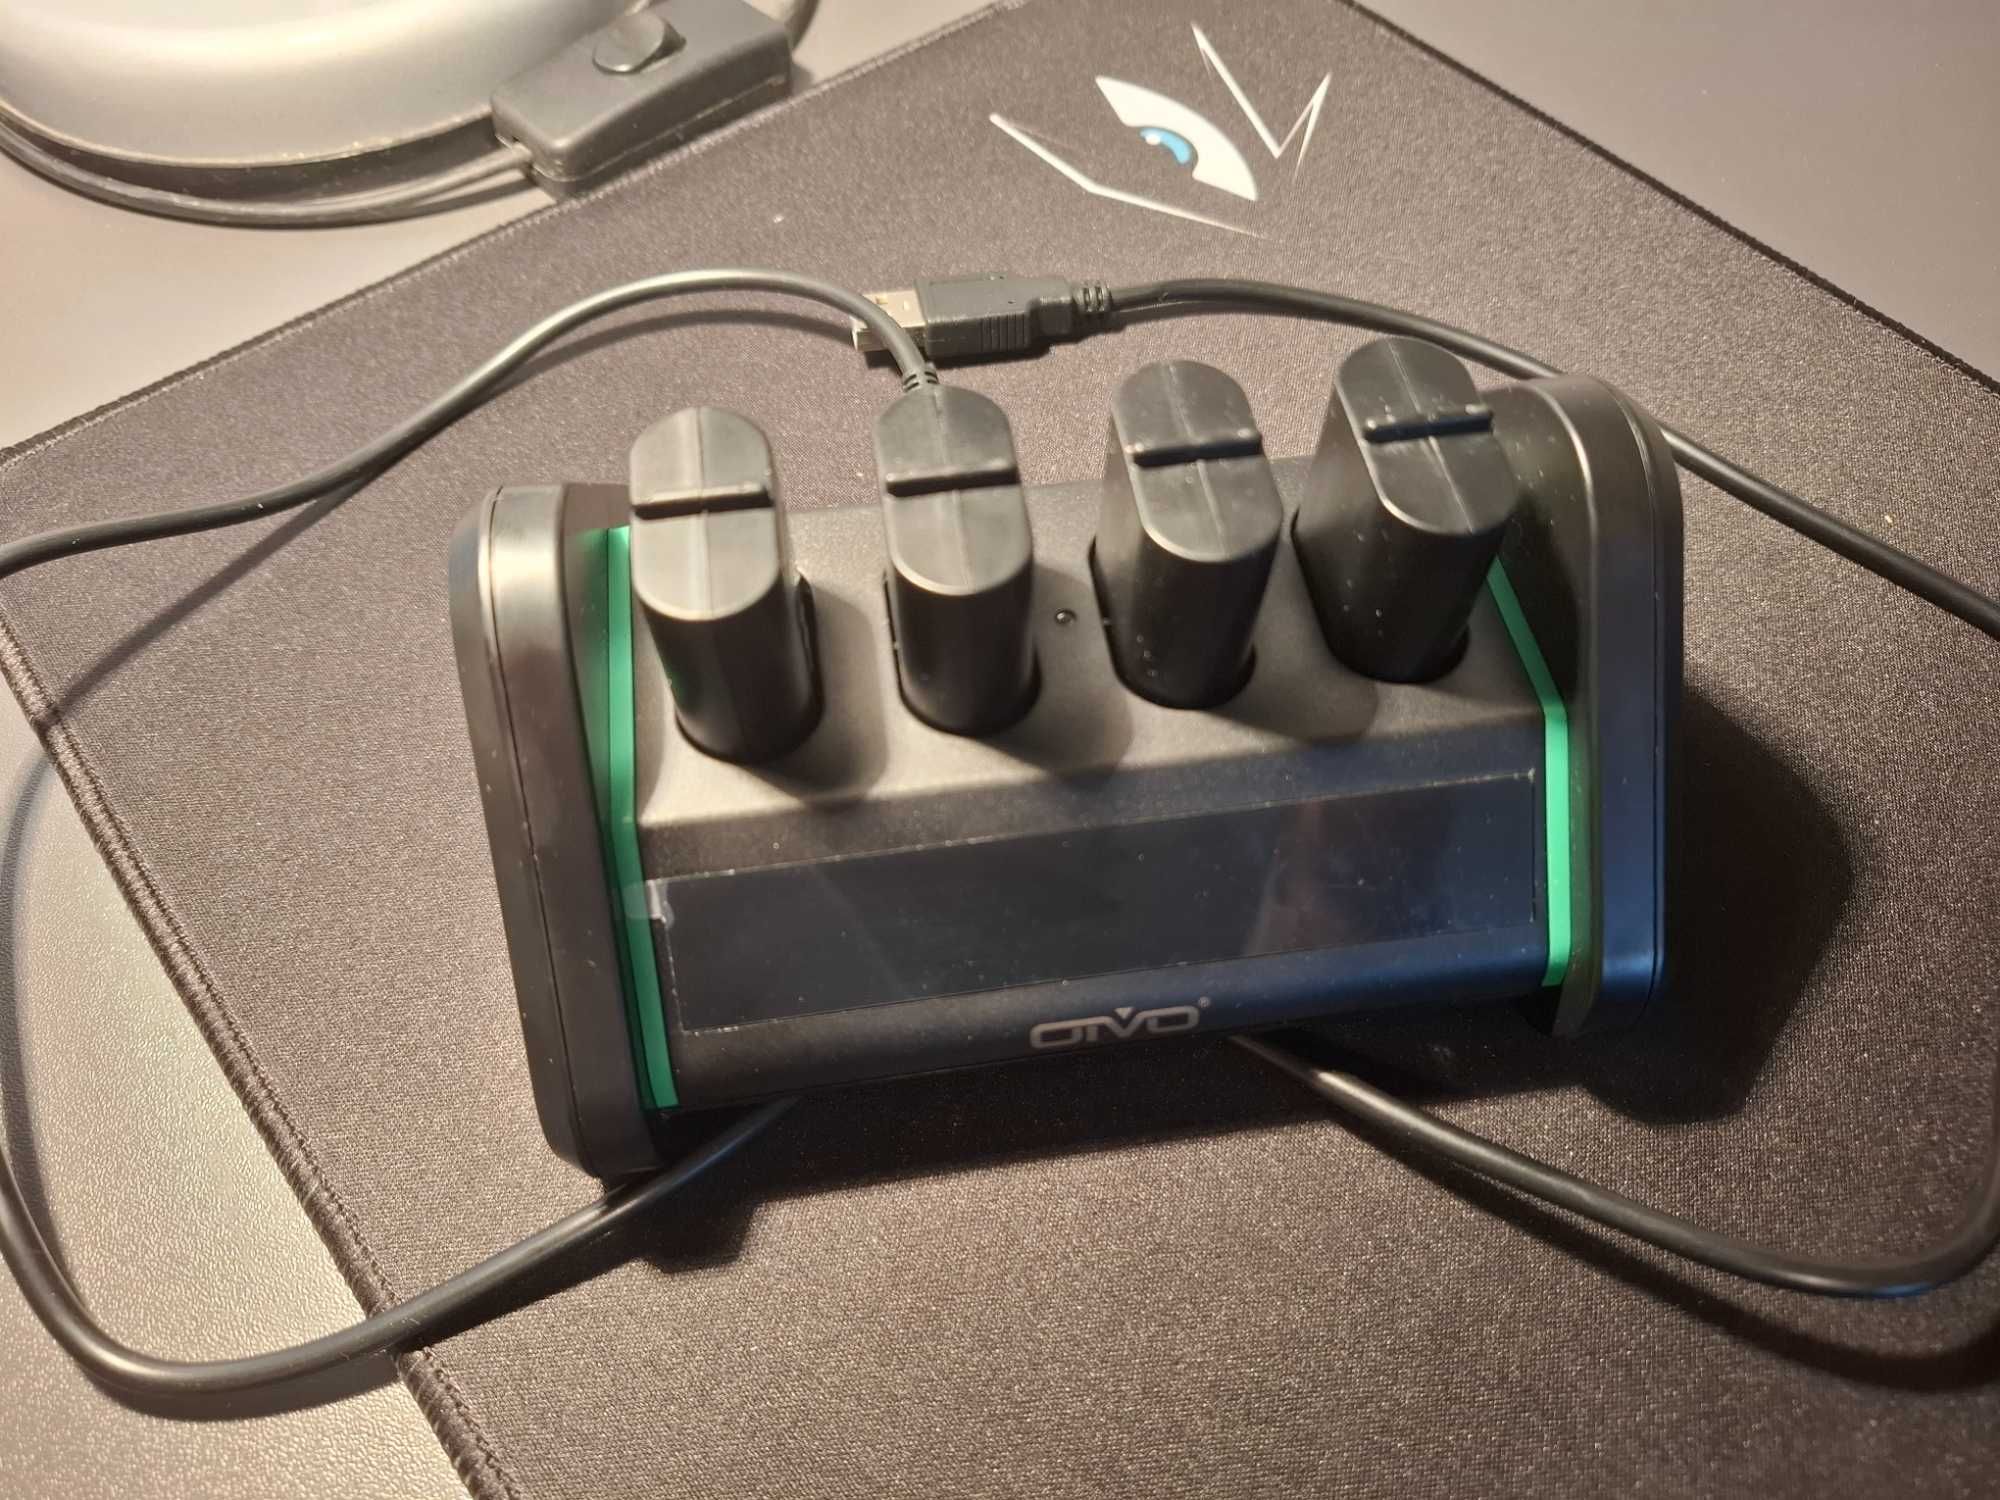 Zestaw akumulatorów OIVO wraz ze stacją ładującą do kontrolera Xbox.